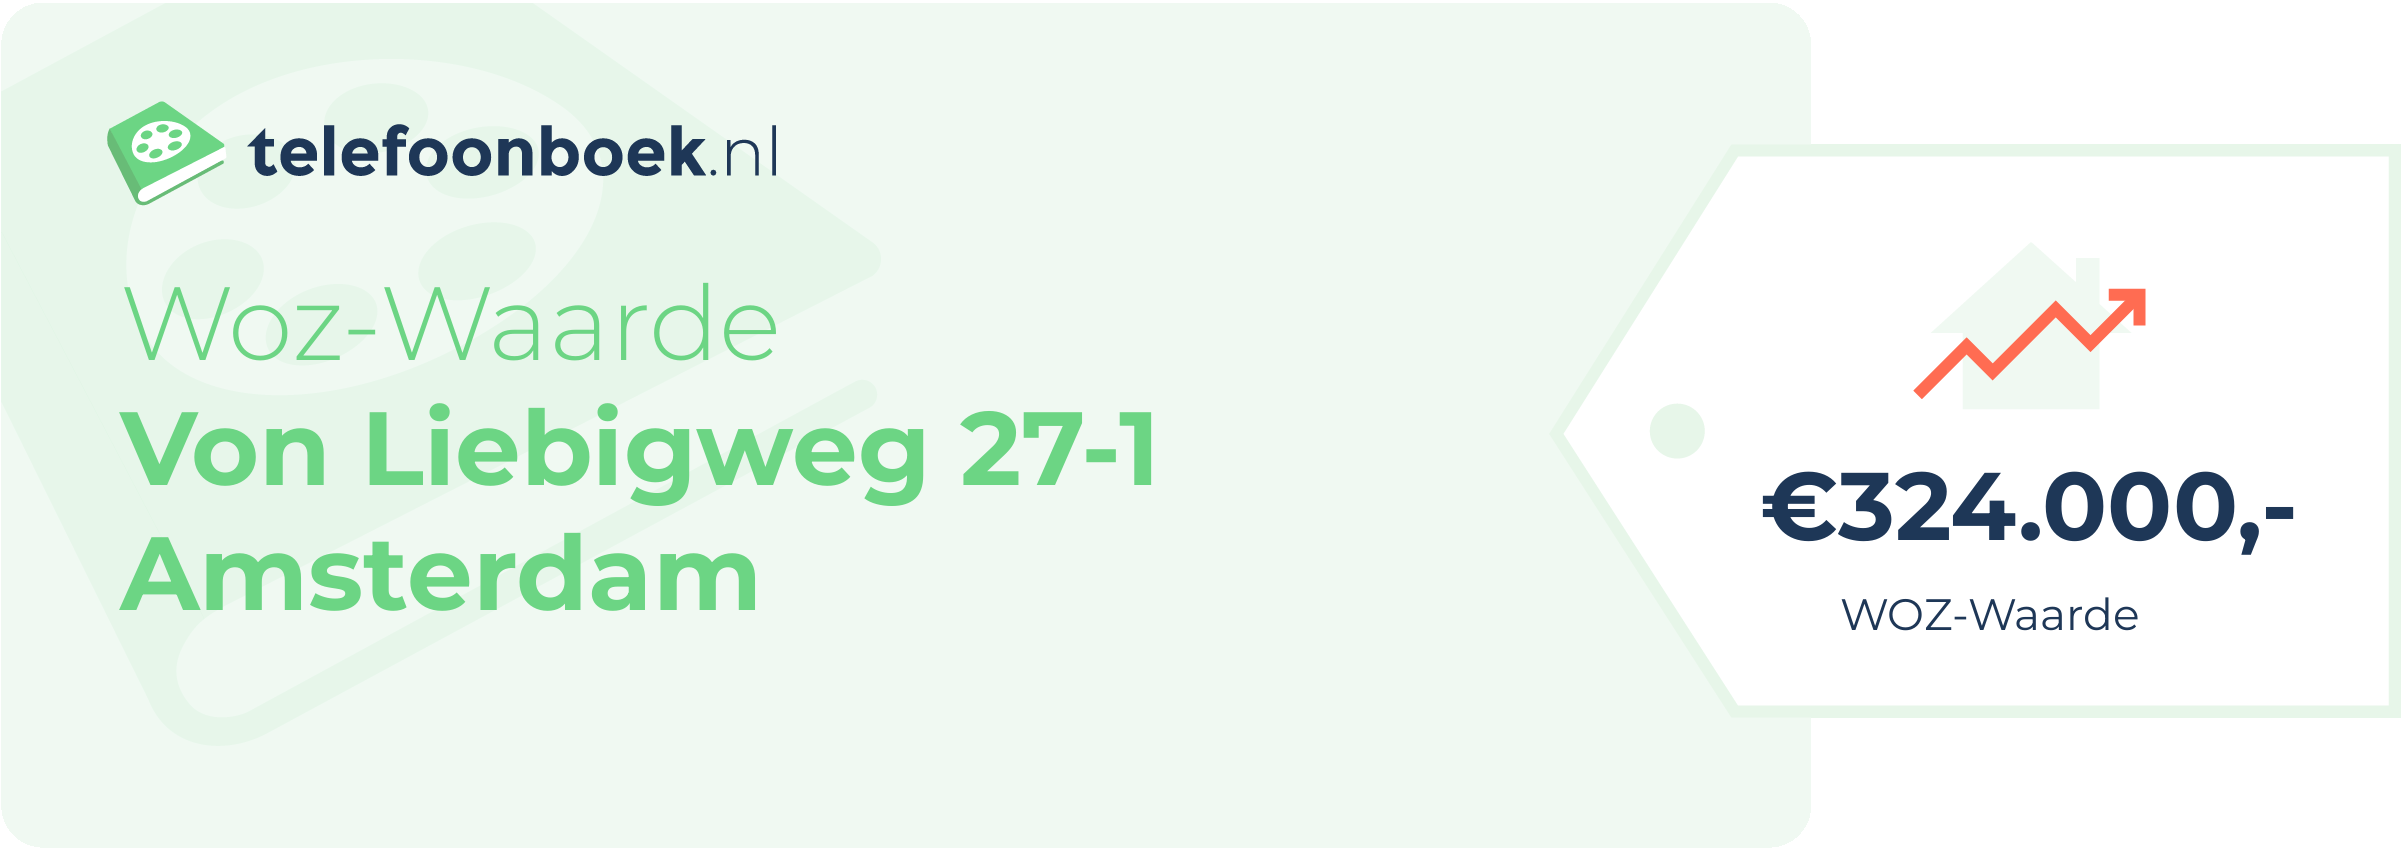 WOZ-waarde Von Liebigweg 27-1 Amsterdam